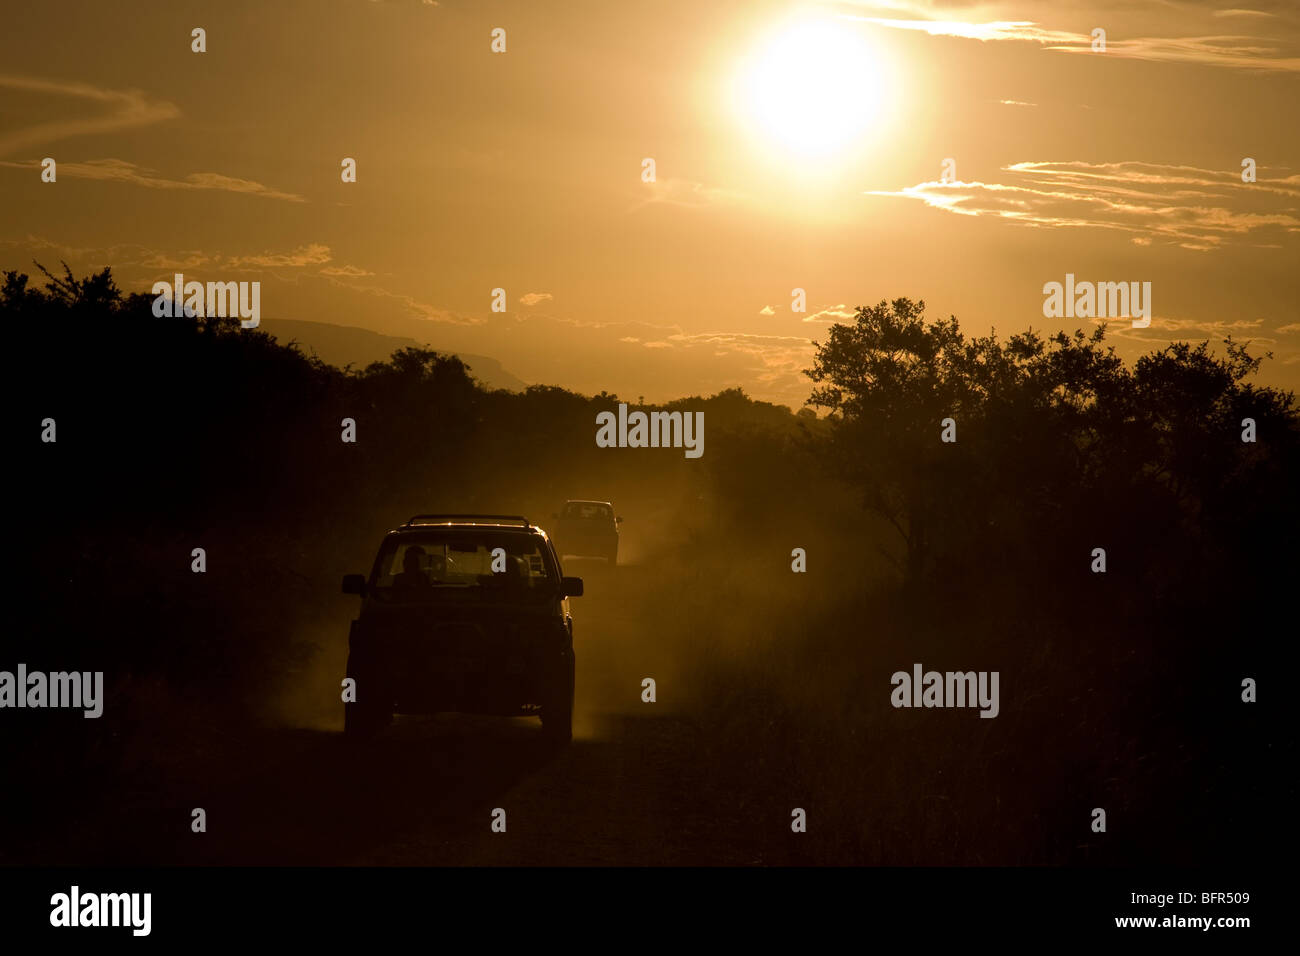 Zwei Fahrzeuge im Konvoi Silhouette in der Abenddämmerung auf einer ländlichen Landstraße Stockfoto